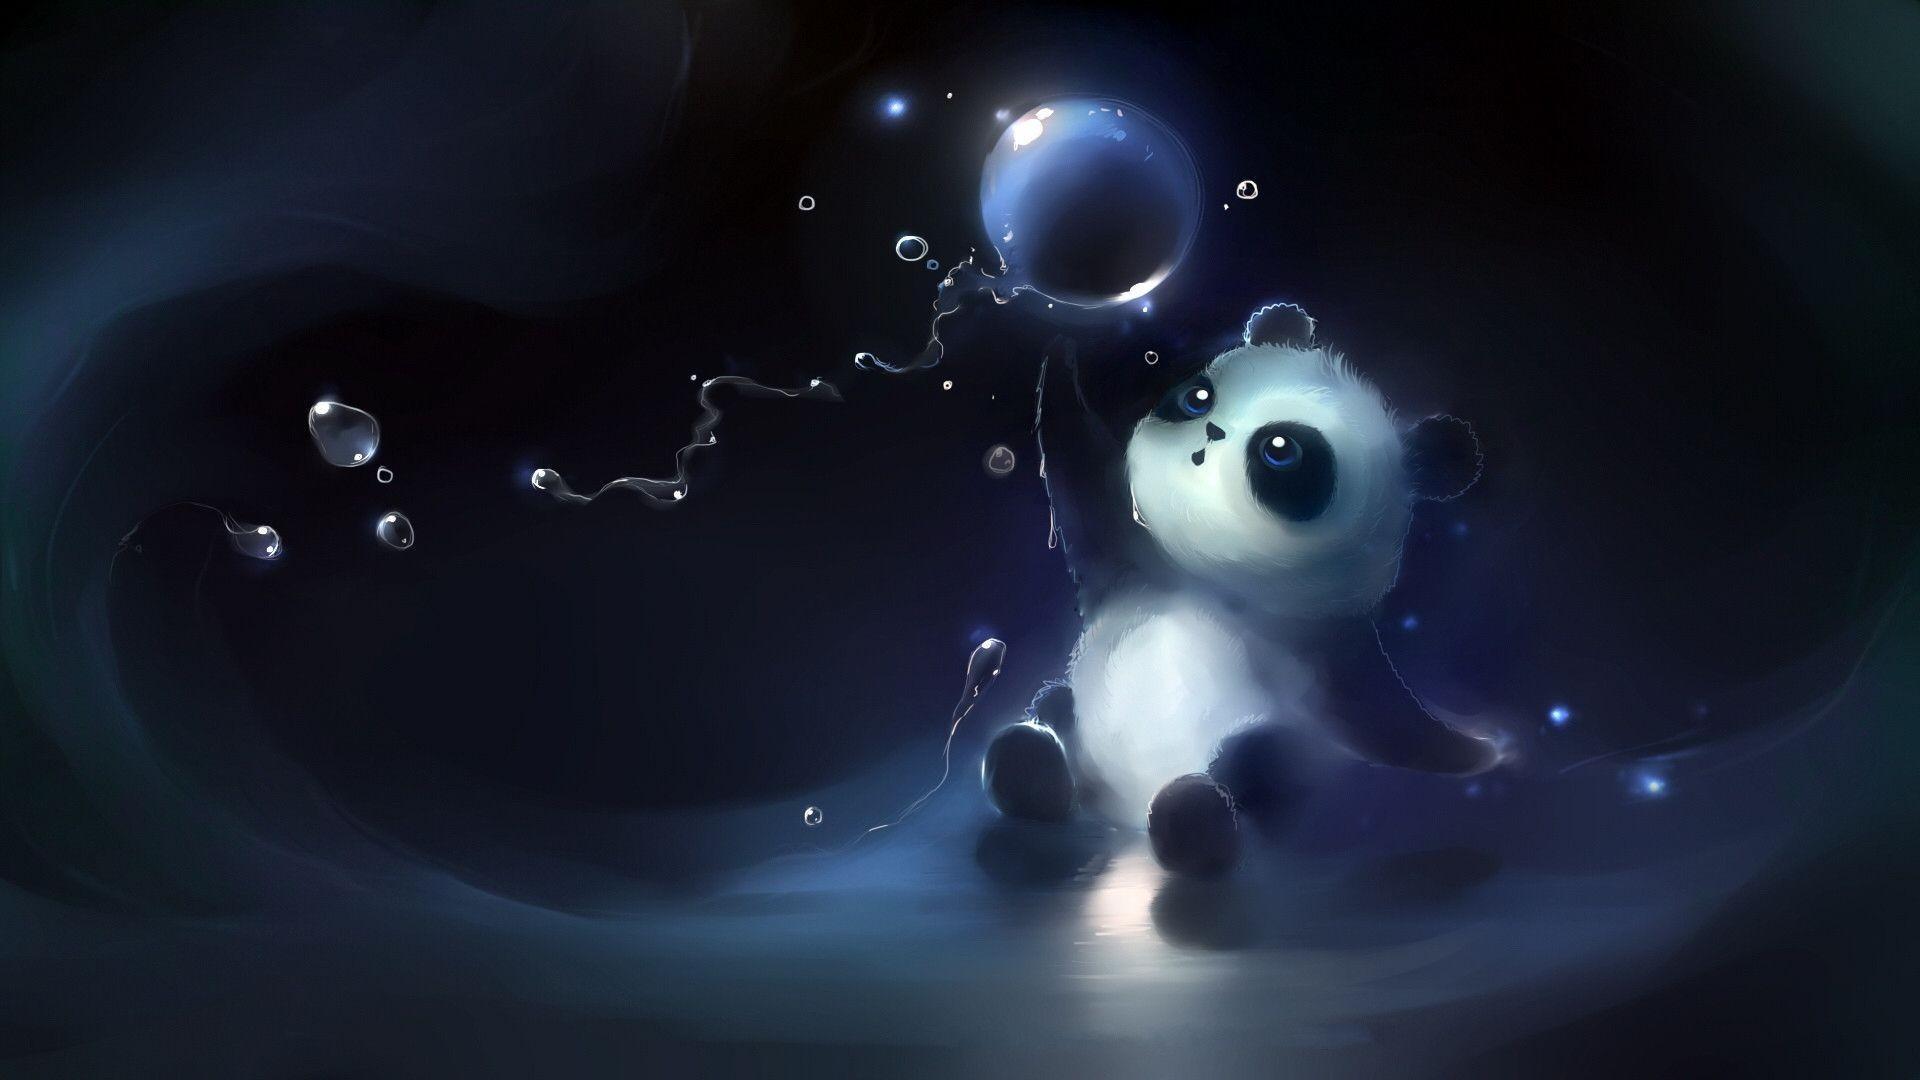 Hình nền Galaxy Panda đẹp tuyệt vời đang chờ đón bạn trên trang Wallpaper Cave! Chúng sẽ giúp bạn thưởng thức không gian mơ mộng trong thiên nhiên với các hình ảnh gấu trúc thật dễ thương và phù hợp với mọi loại điện thoại. Hãy xem ảnh liên quan để được gợi ý thêm.